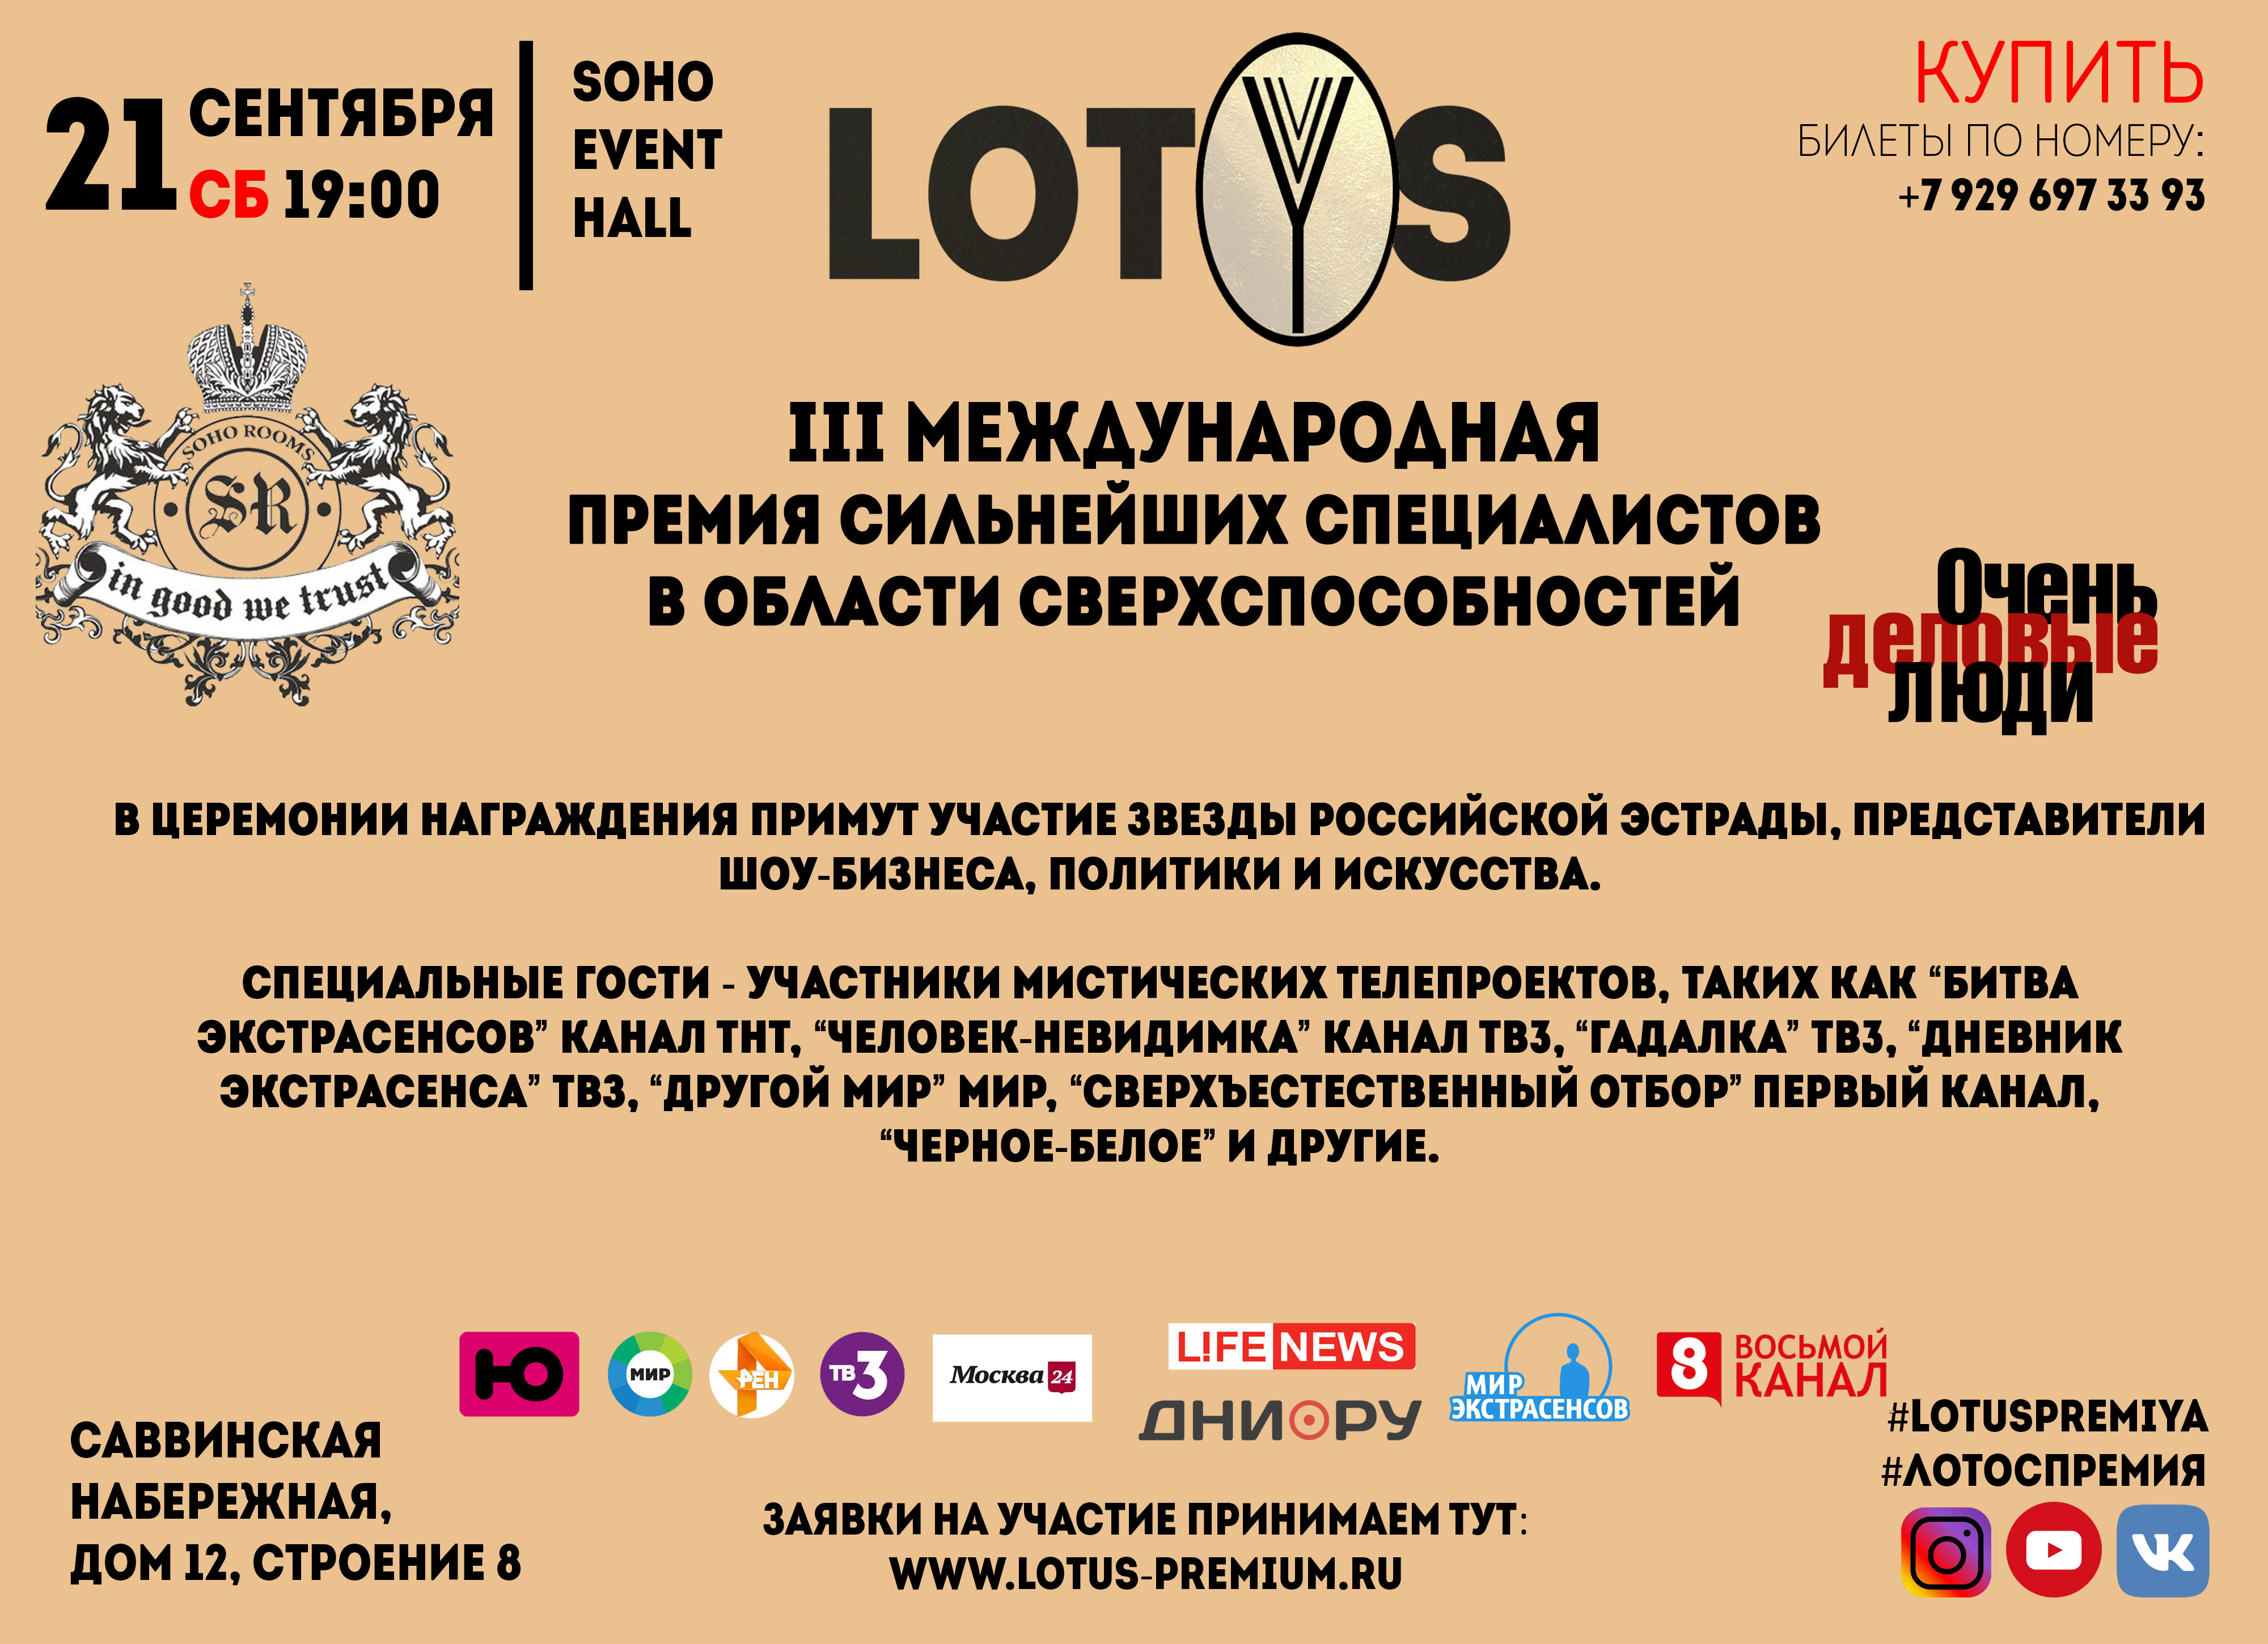 21 сентября  2019 г. в  Soho Rooms приглашаем Вас, принять участие в III-Международной Премии сверхспособностей человека “Лотос”  (“LOTYS”).